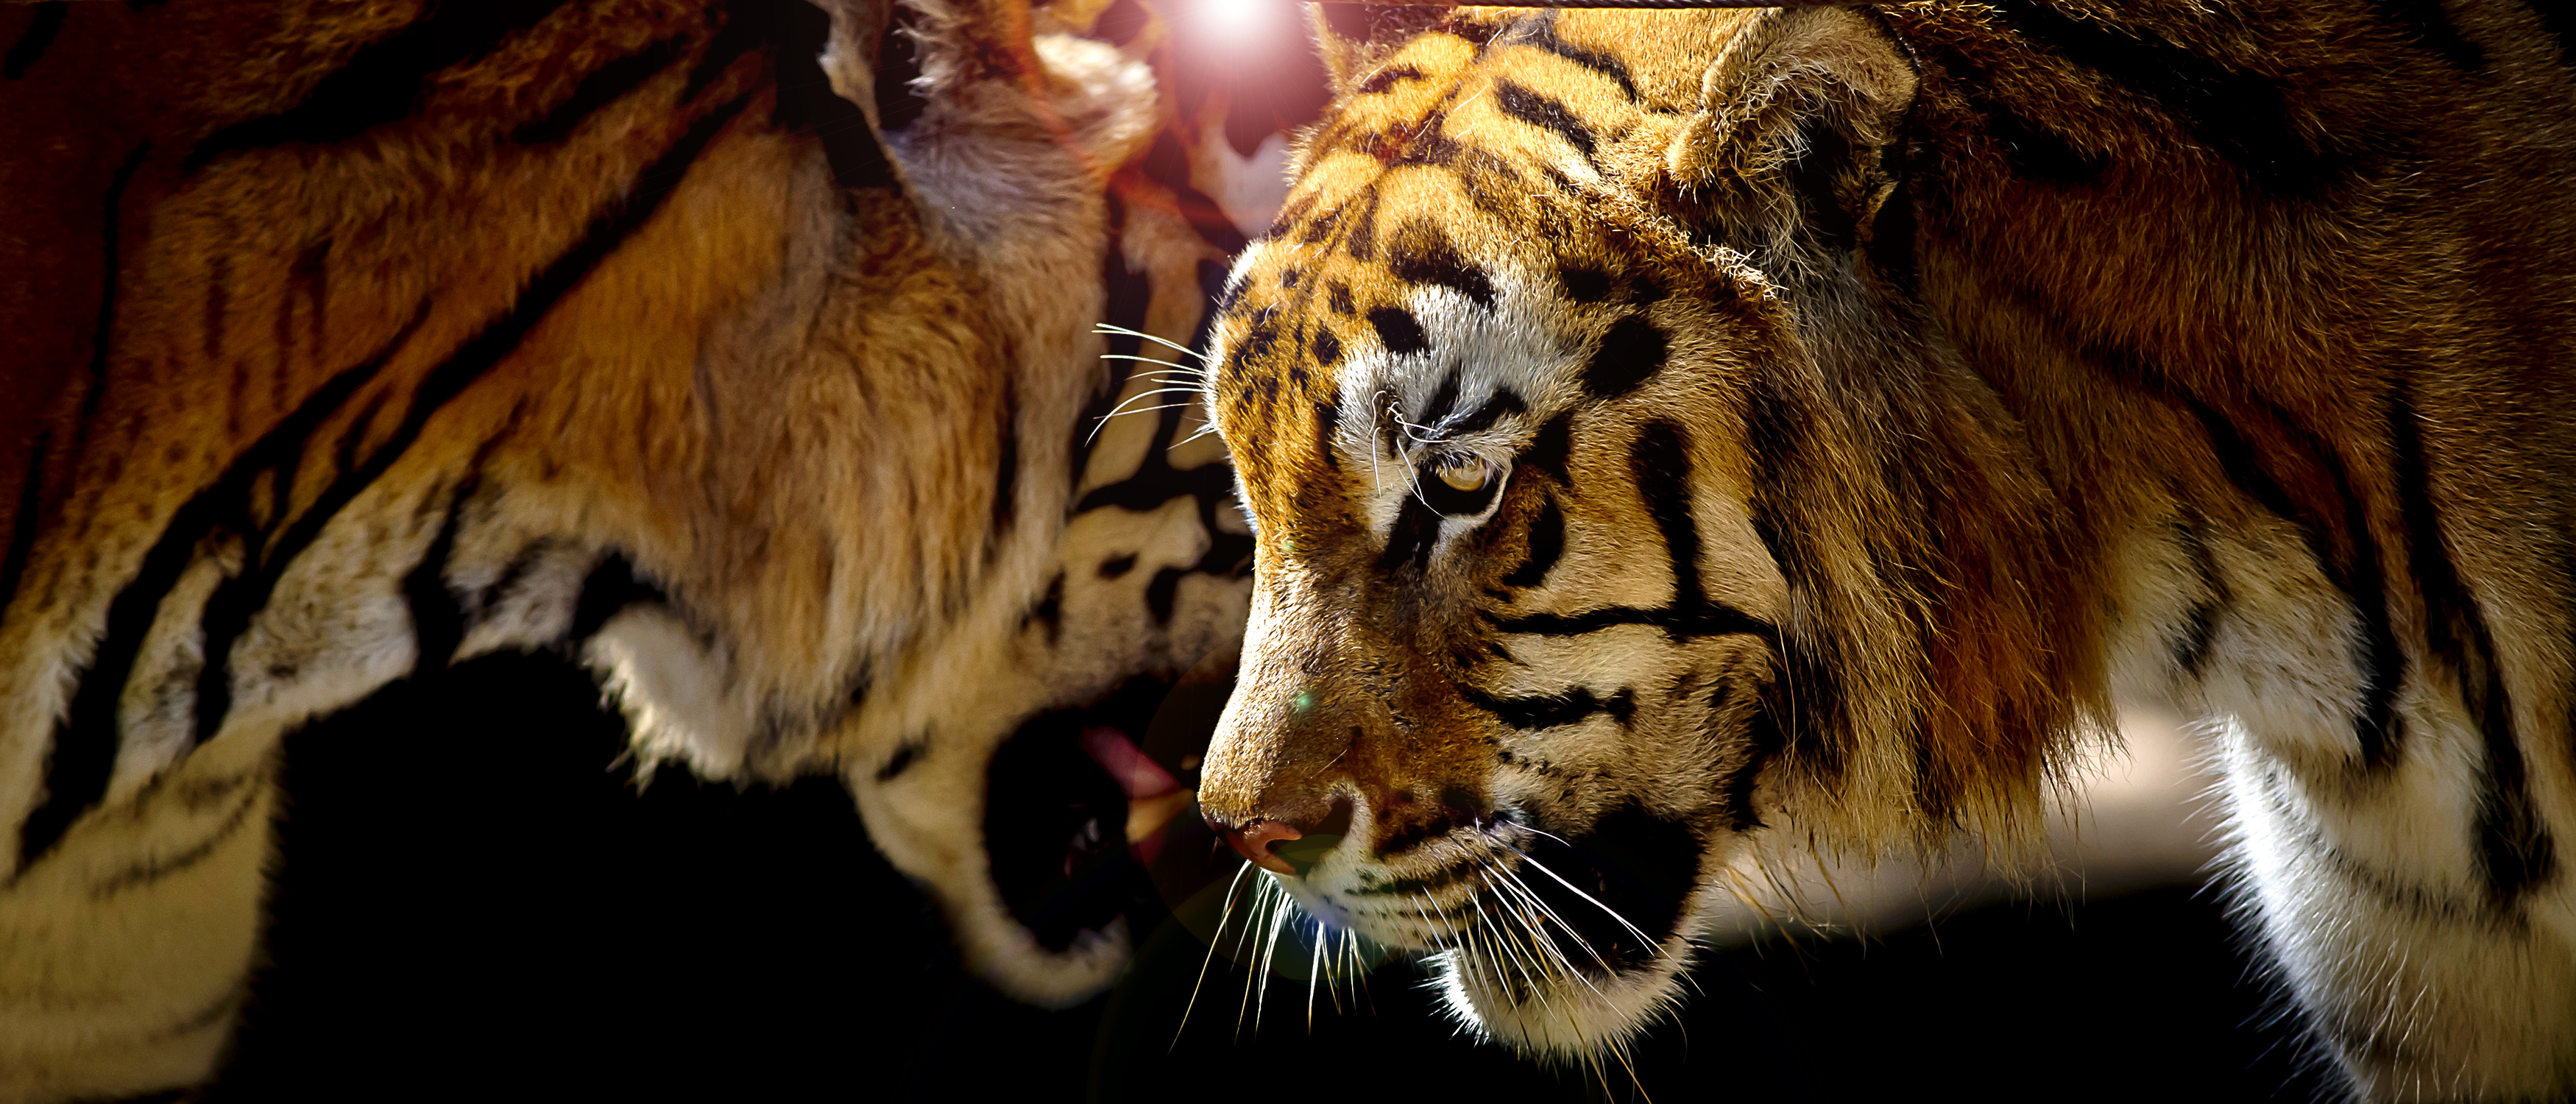 Фото бесплатно кот семьи, панорама, портрет тигра